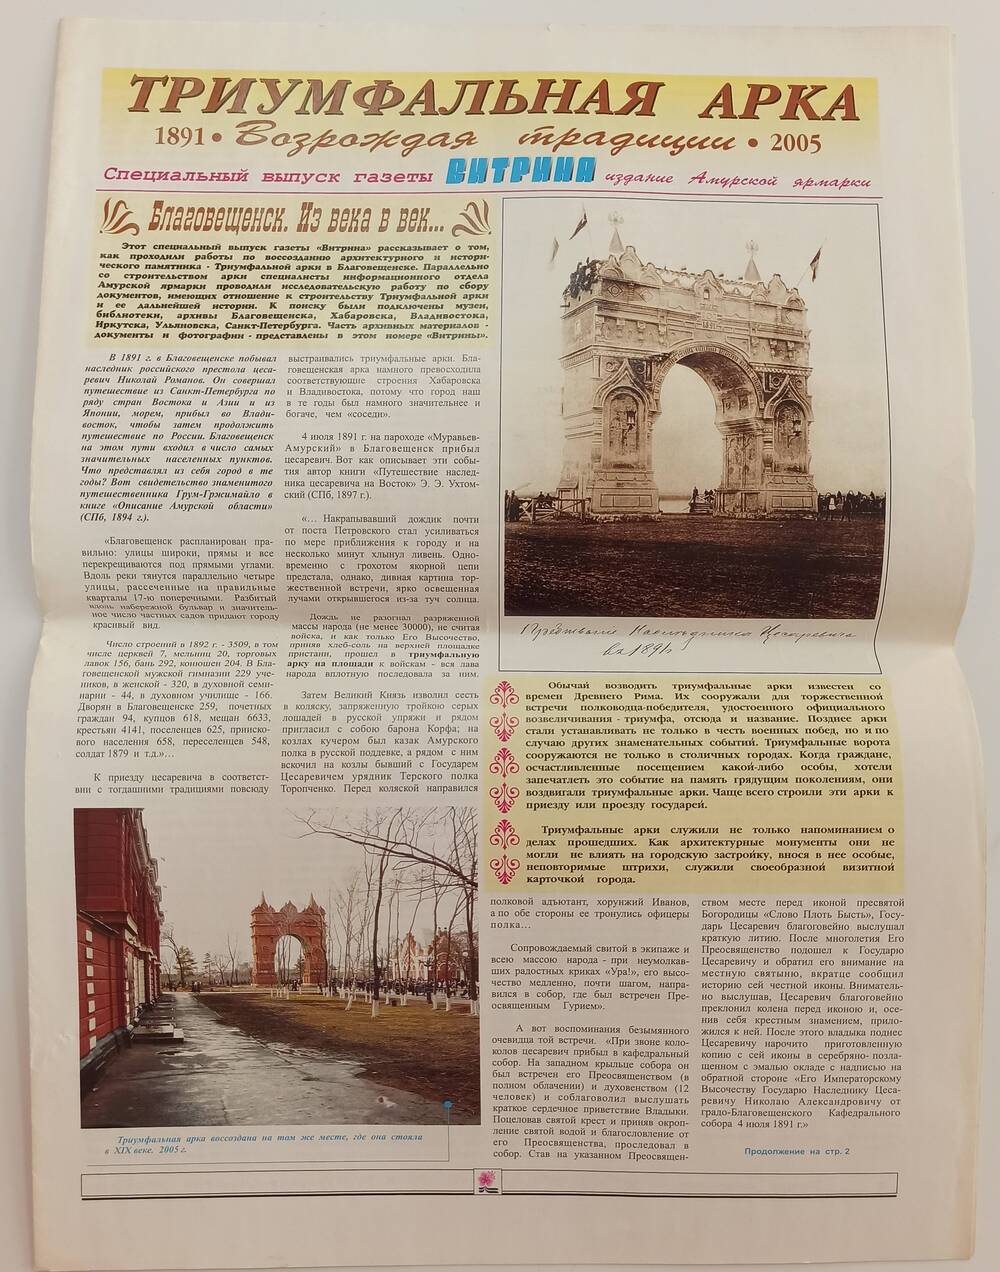 Специальный выпуск газеты Витрина. Триумфальная арка 2005 год.